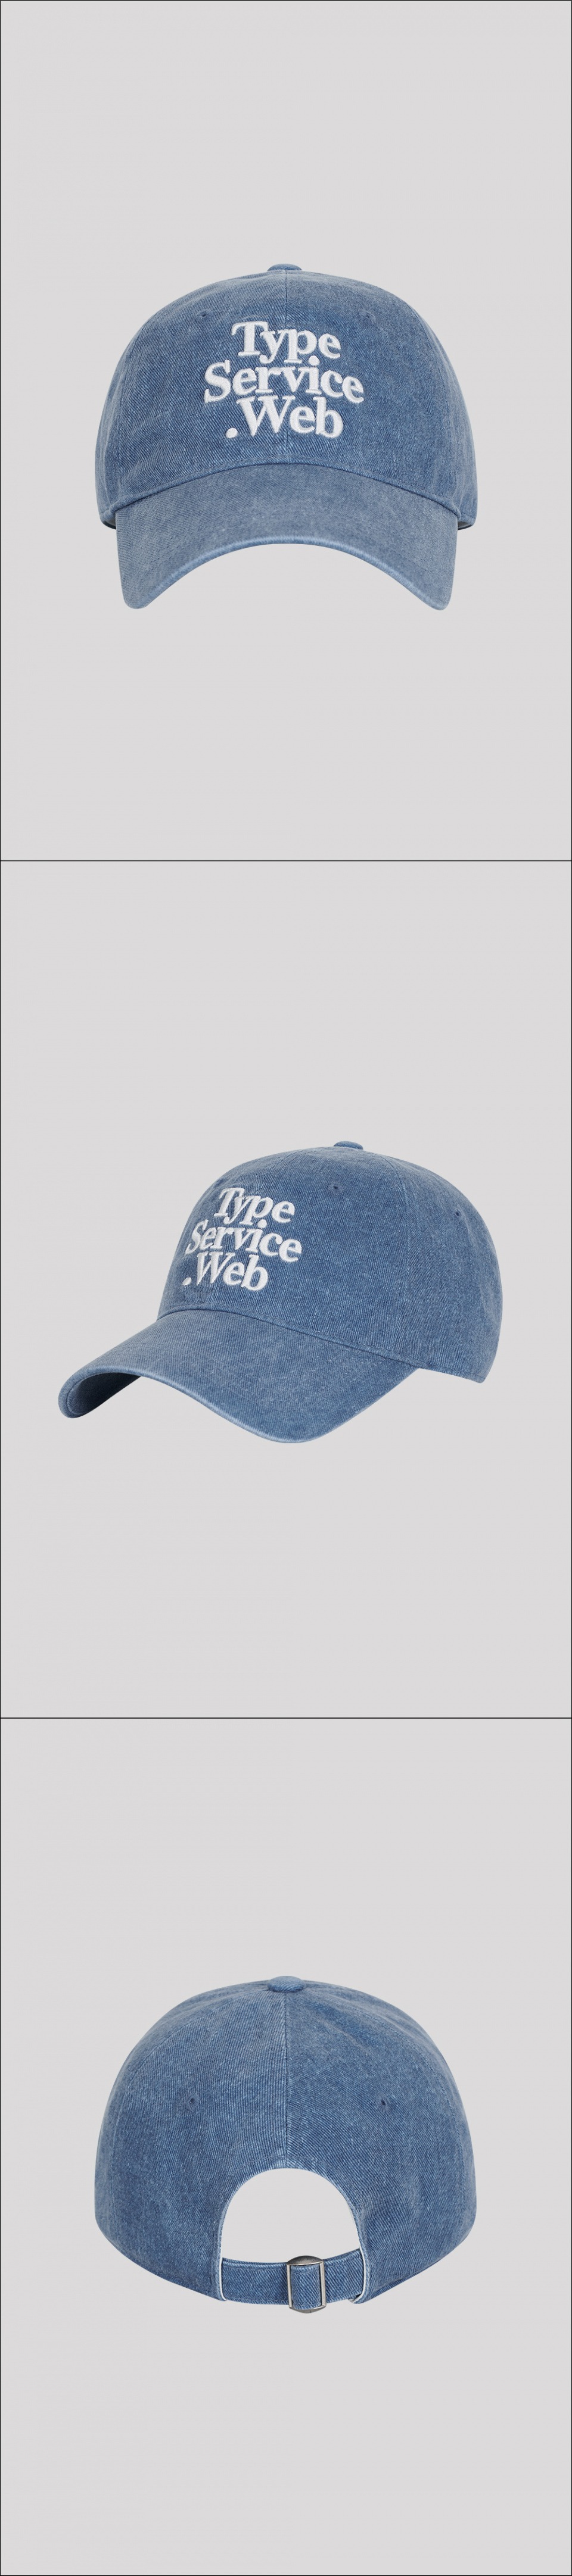 타입서비스(TYPE SERVICE) Typeservice Web Cap [Blue]